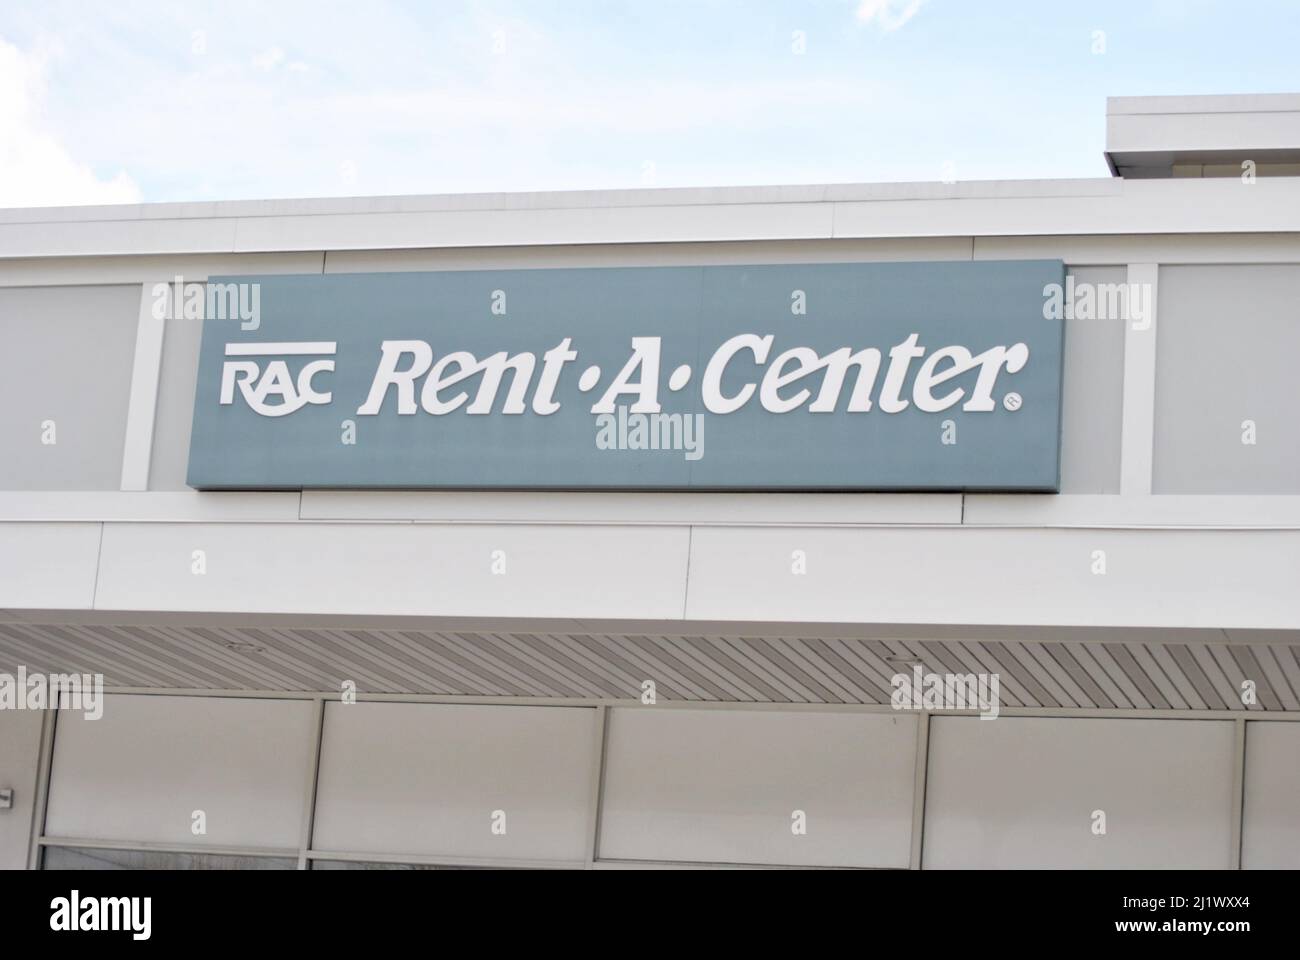 Rent-A-Center, Inc. - Fornitore di servizi di leasing per i clienti privati. Rent-A-Center ha negozi negli Stati Uniti, in Messico e a Porto Rico. Marzo Foto Stock